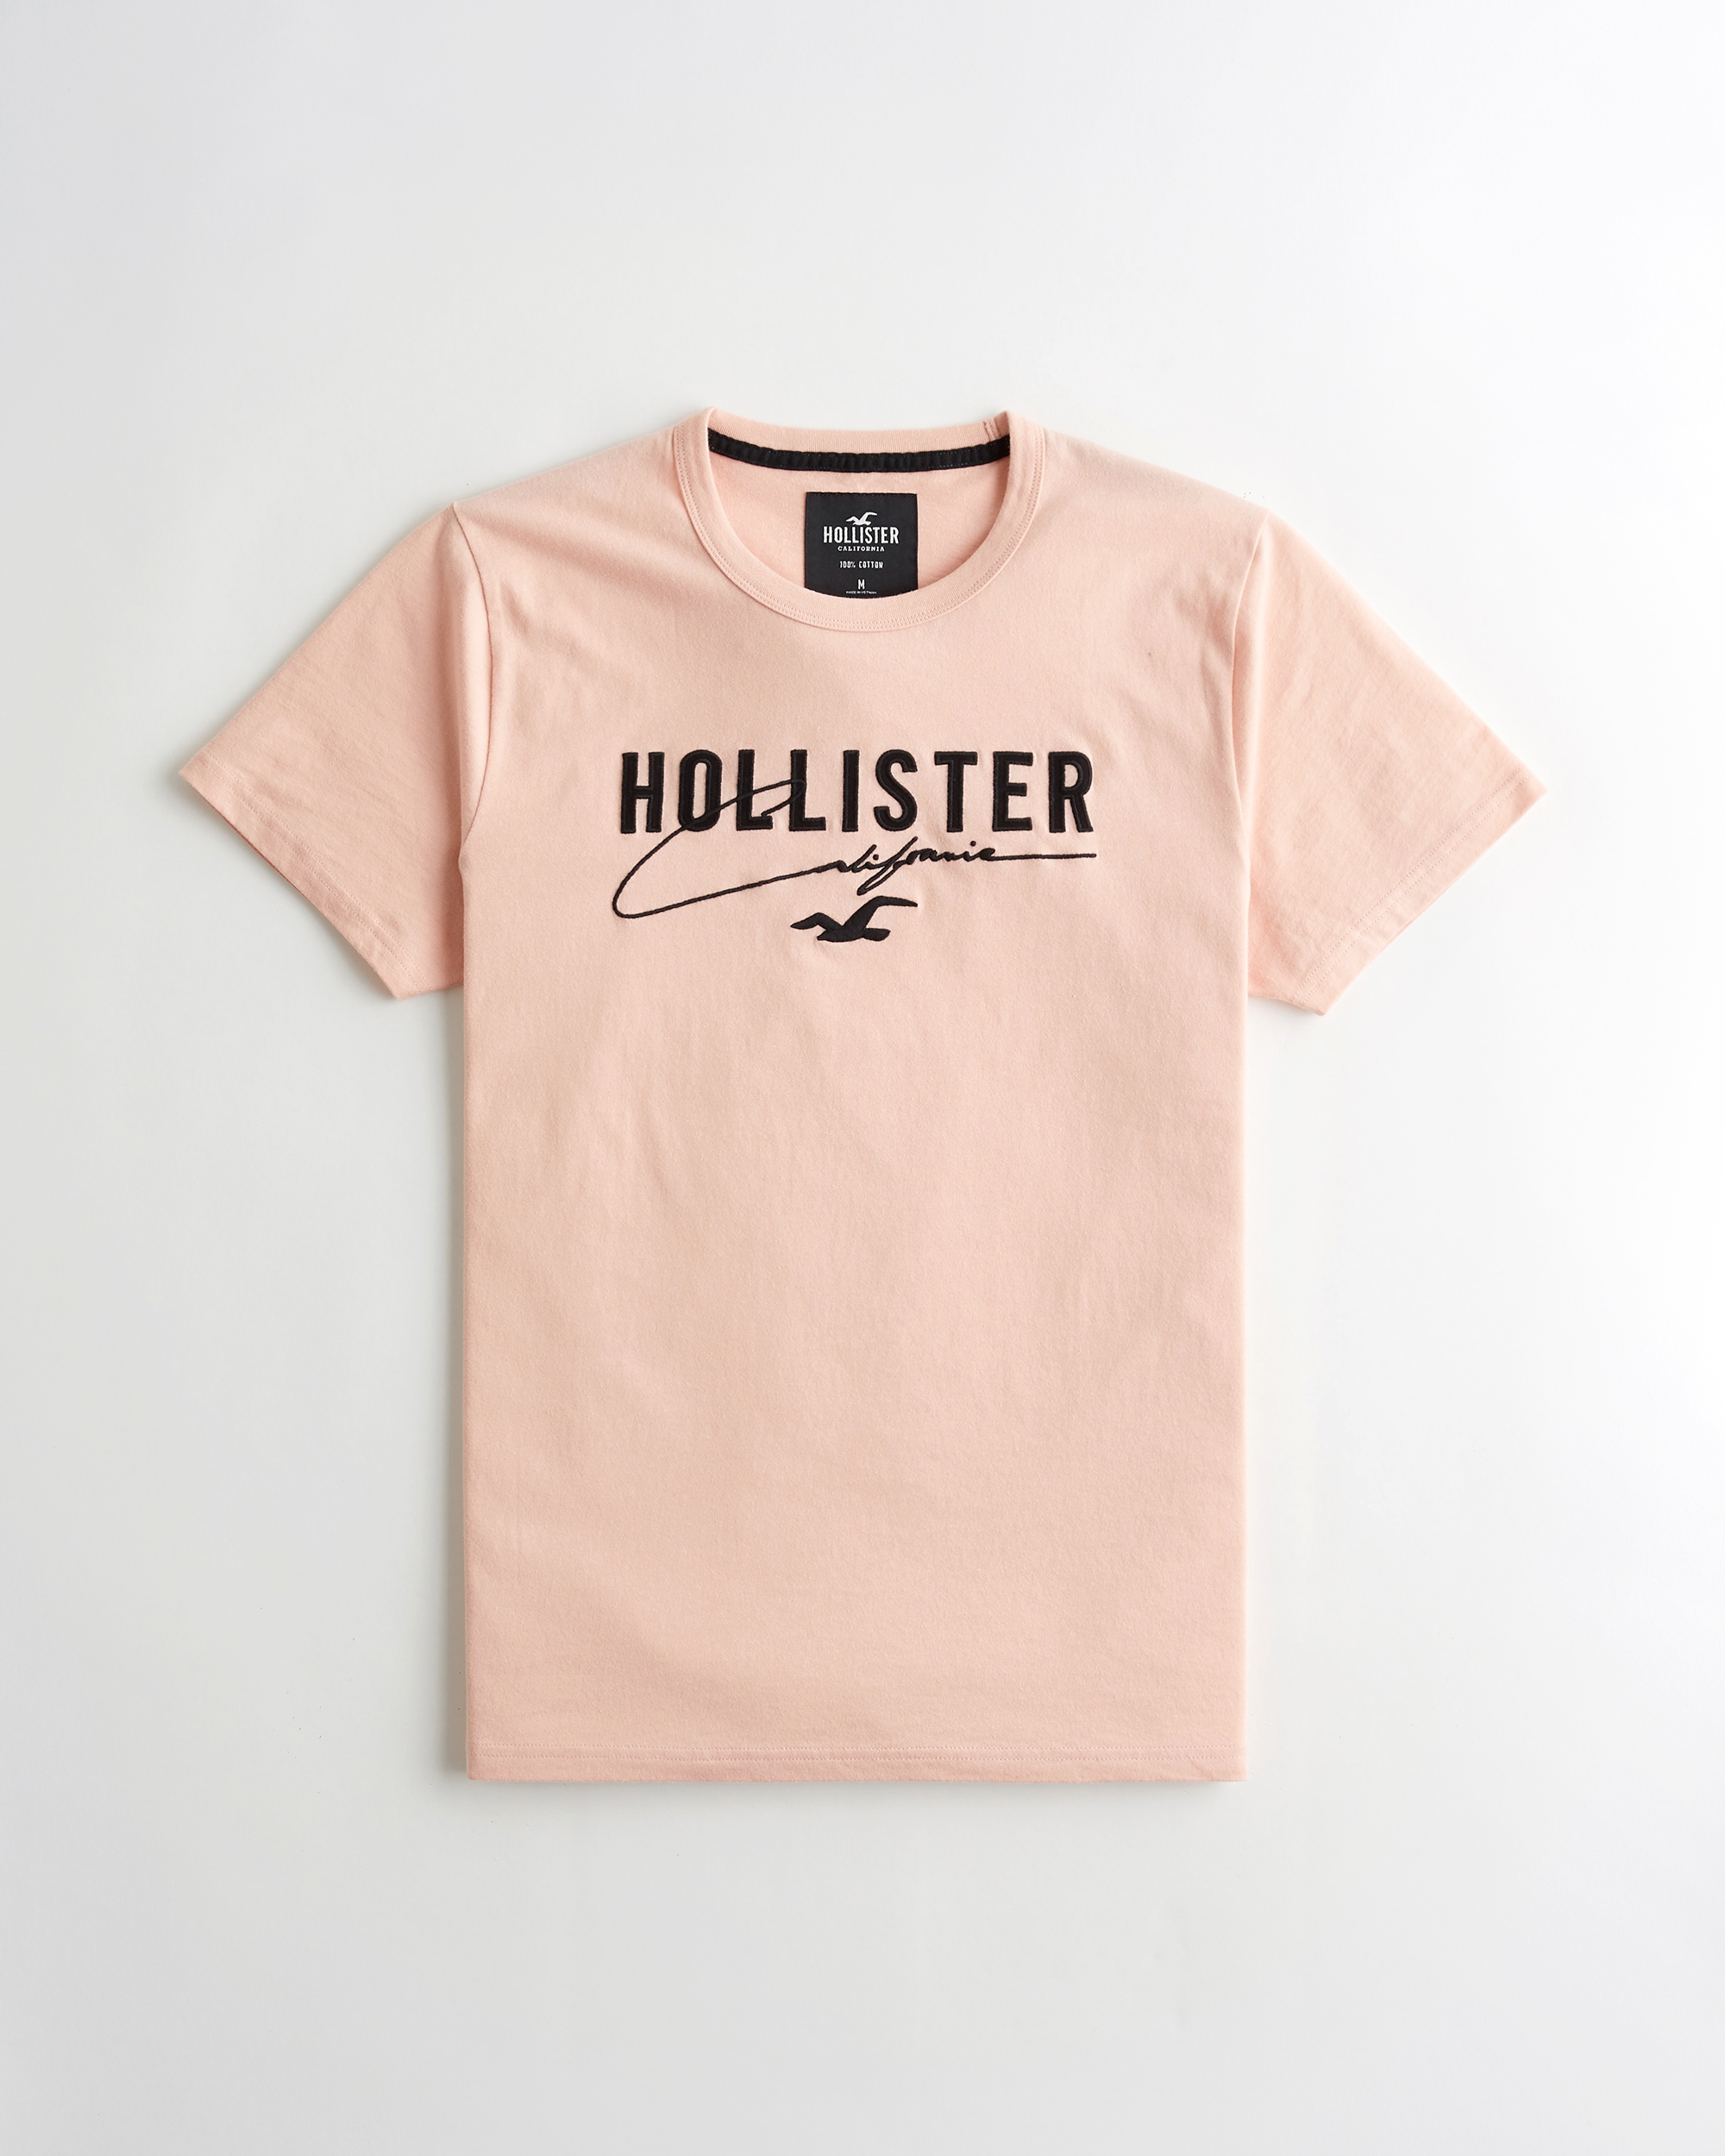 hollister t shirts